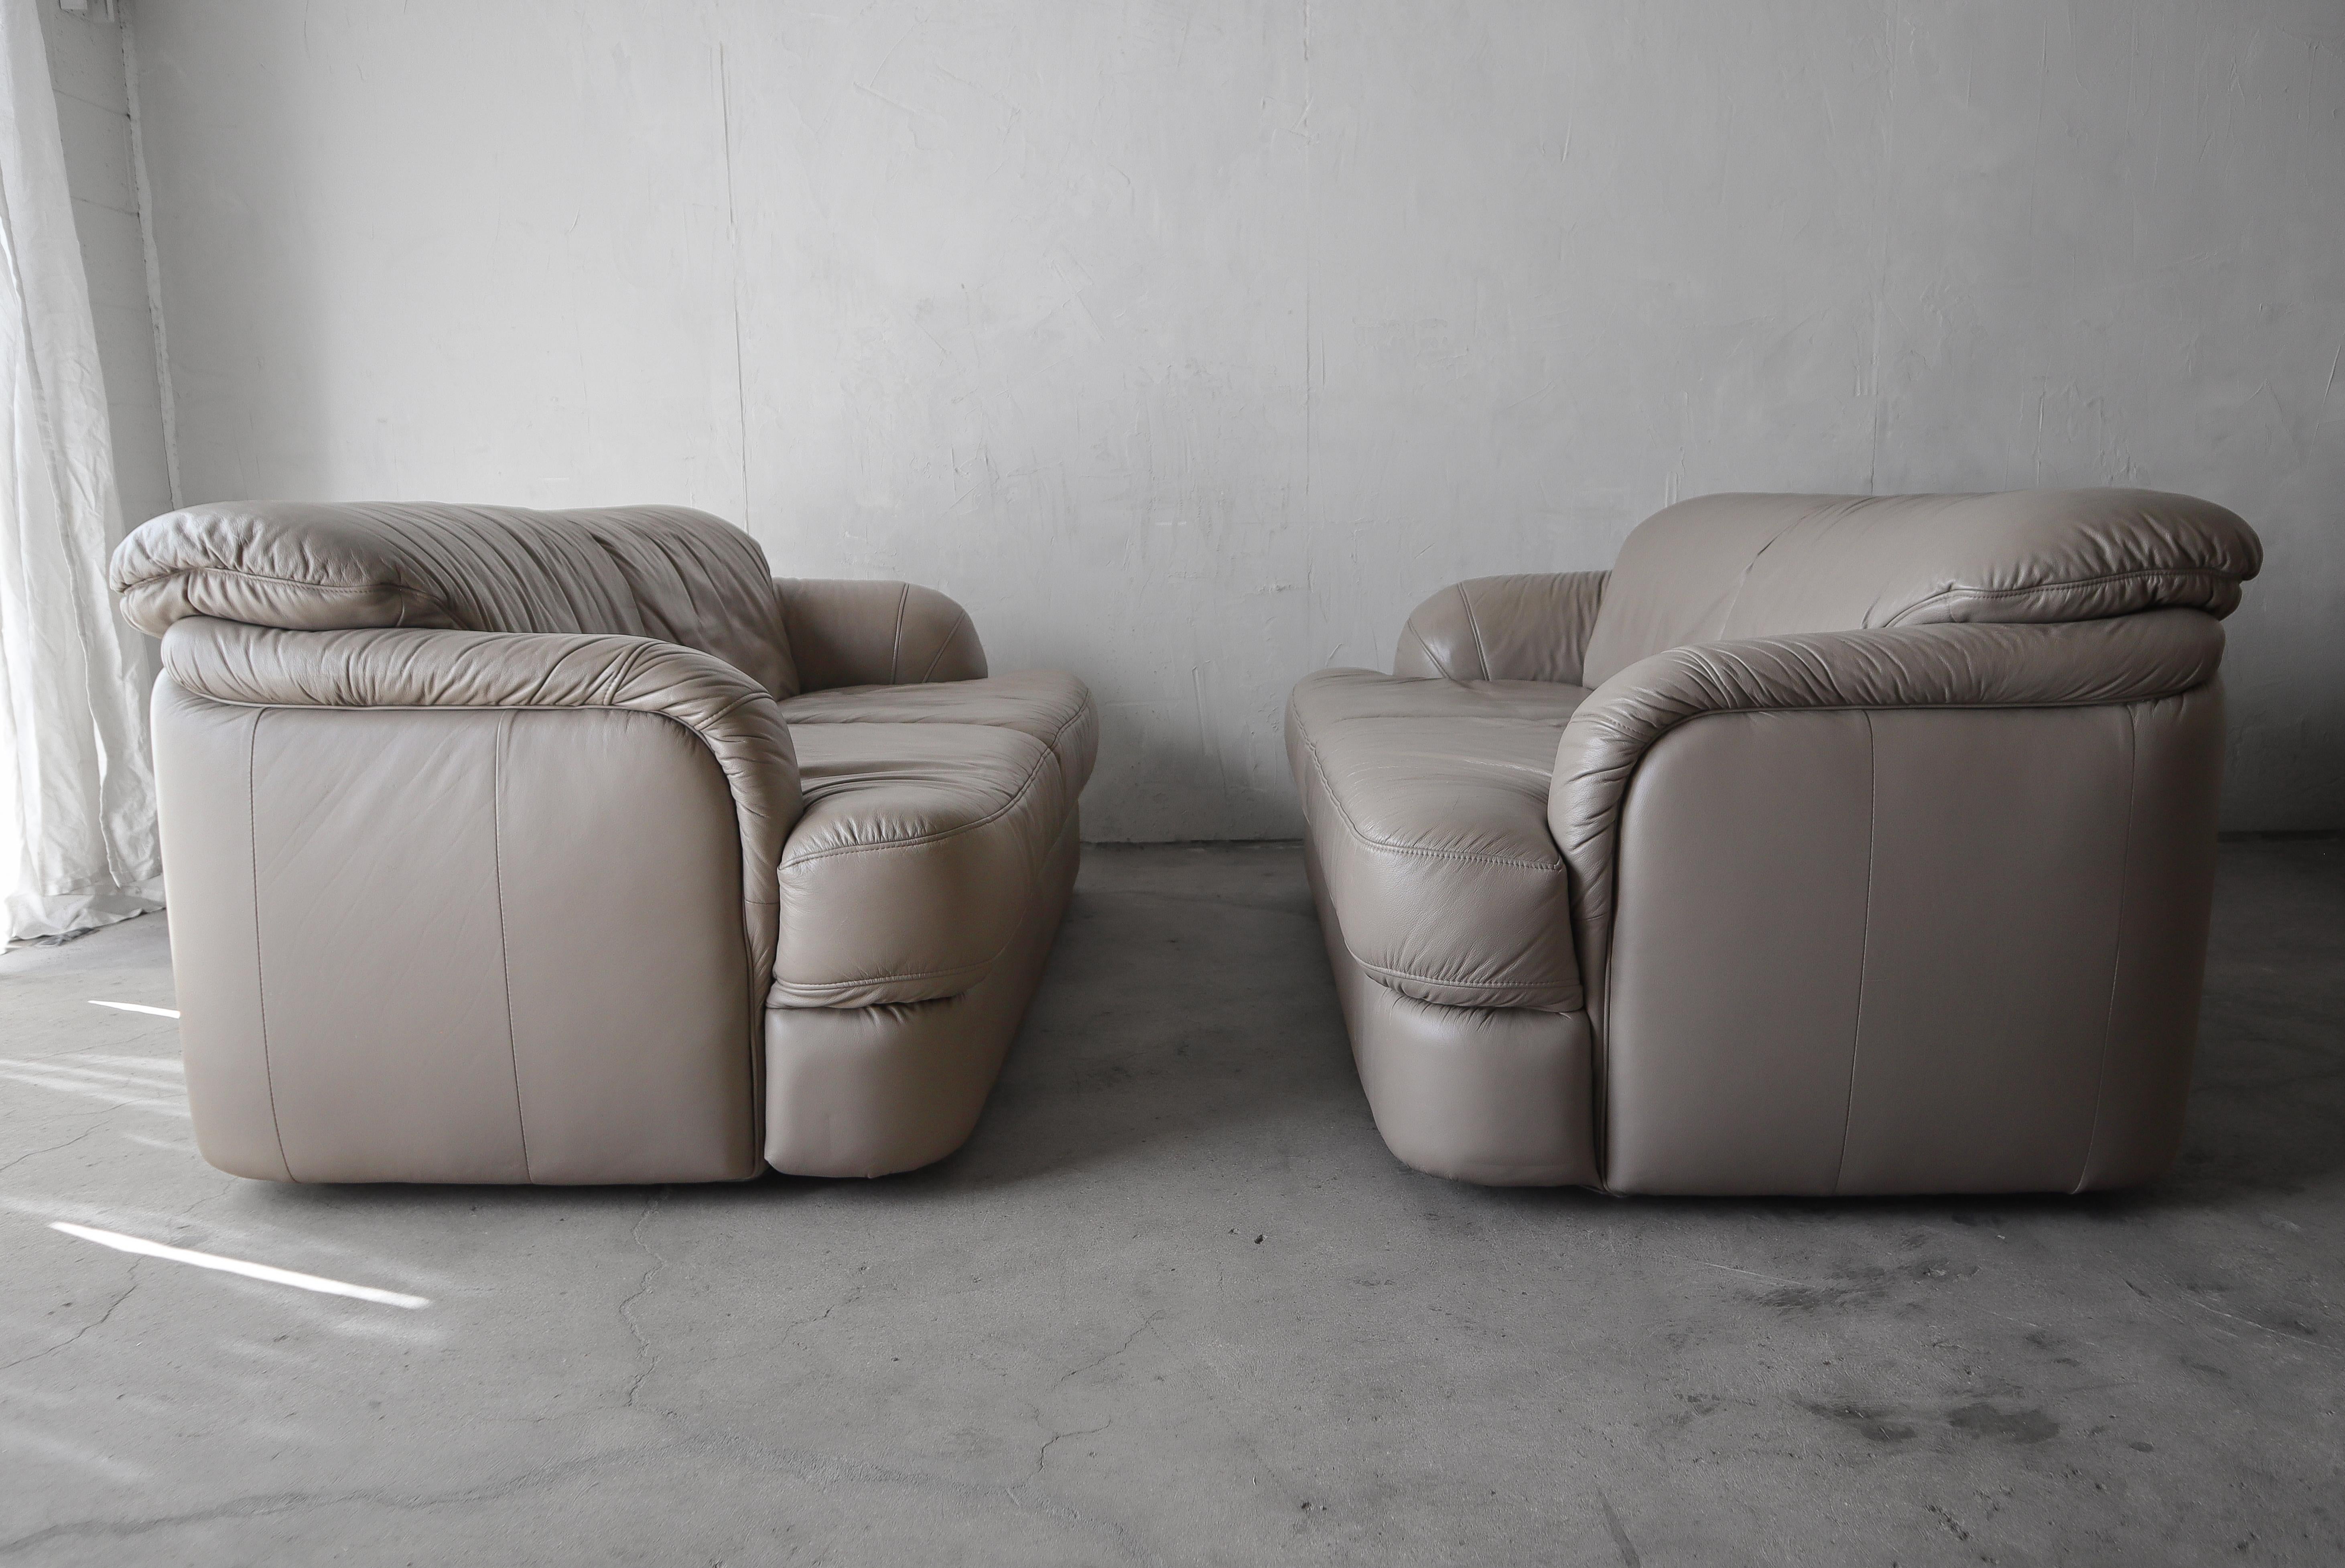 Belle paire de fauteuils en cuir post-moderne fabriqués en Allemagne.  

Les canapés sont en bon état général.  Il y a une certaine usure du cuir comme on peut le voir sur les dernières photos, mais il n'y a pas de dommages réels, de taches ou